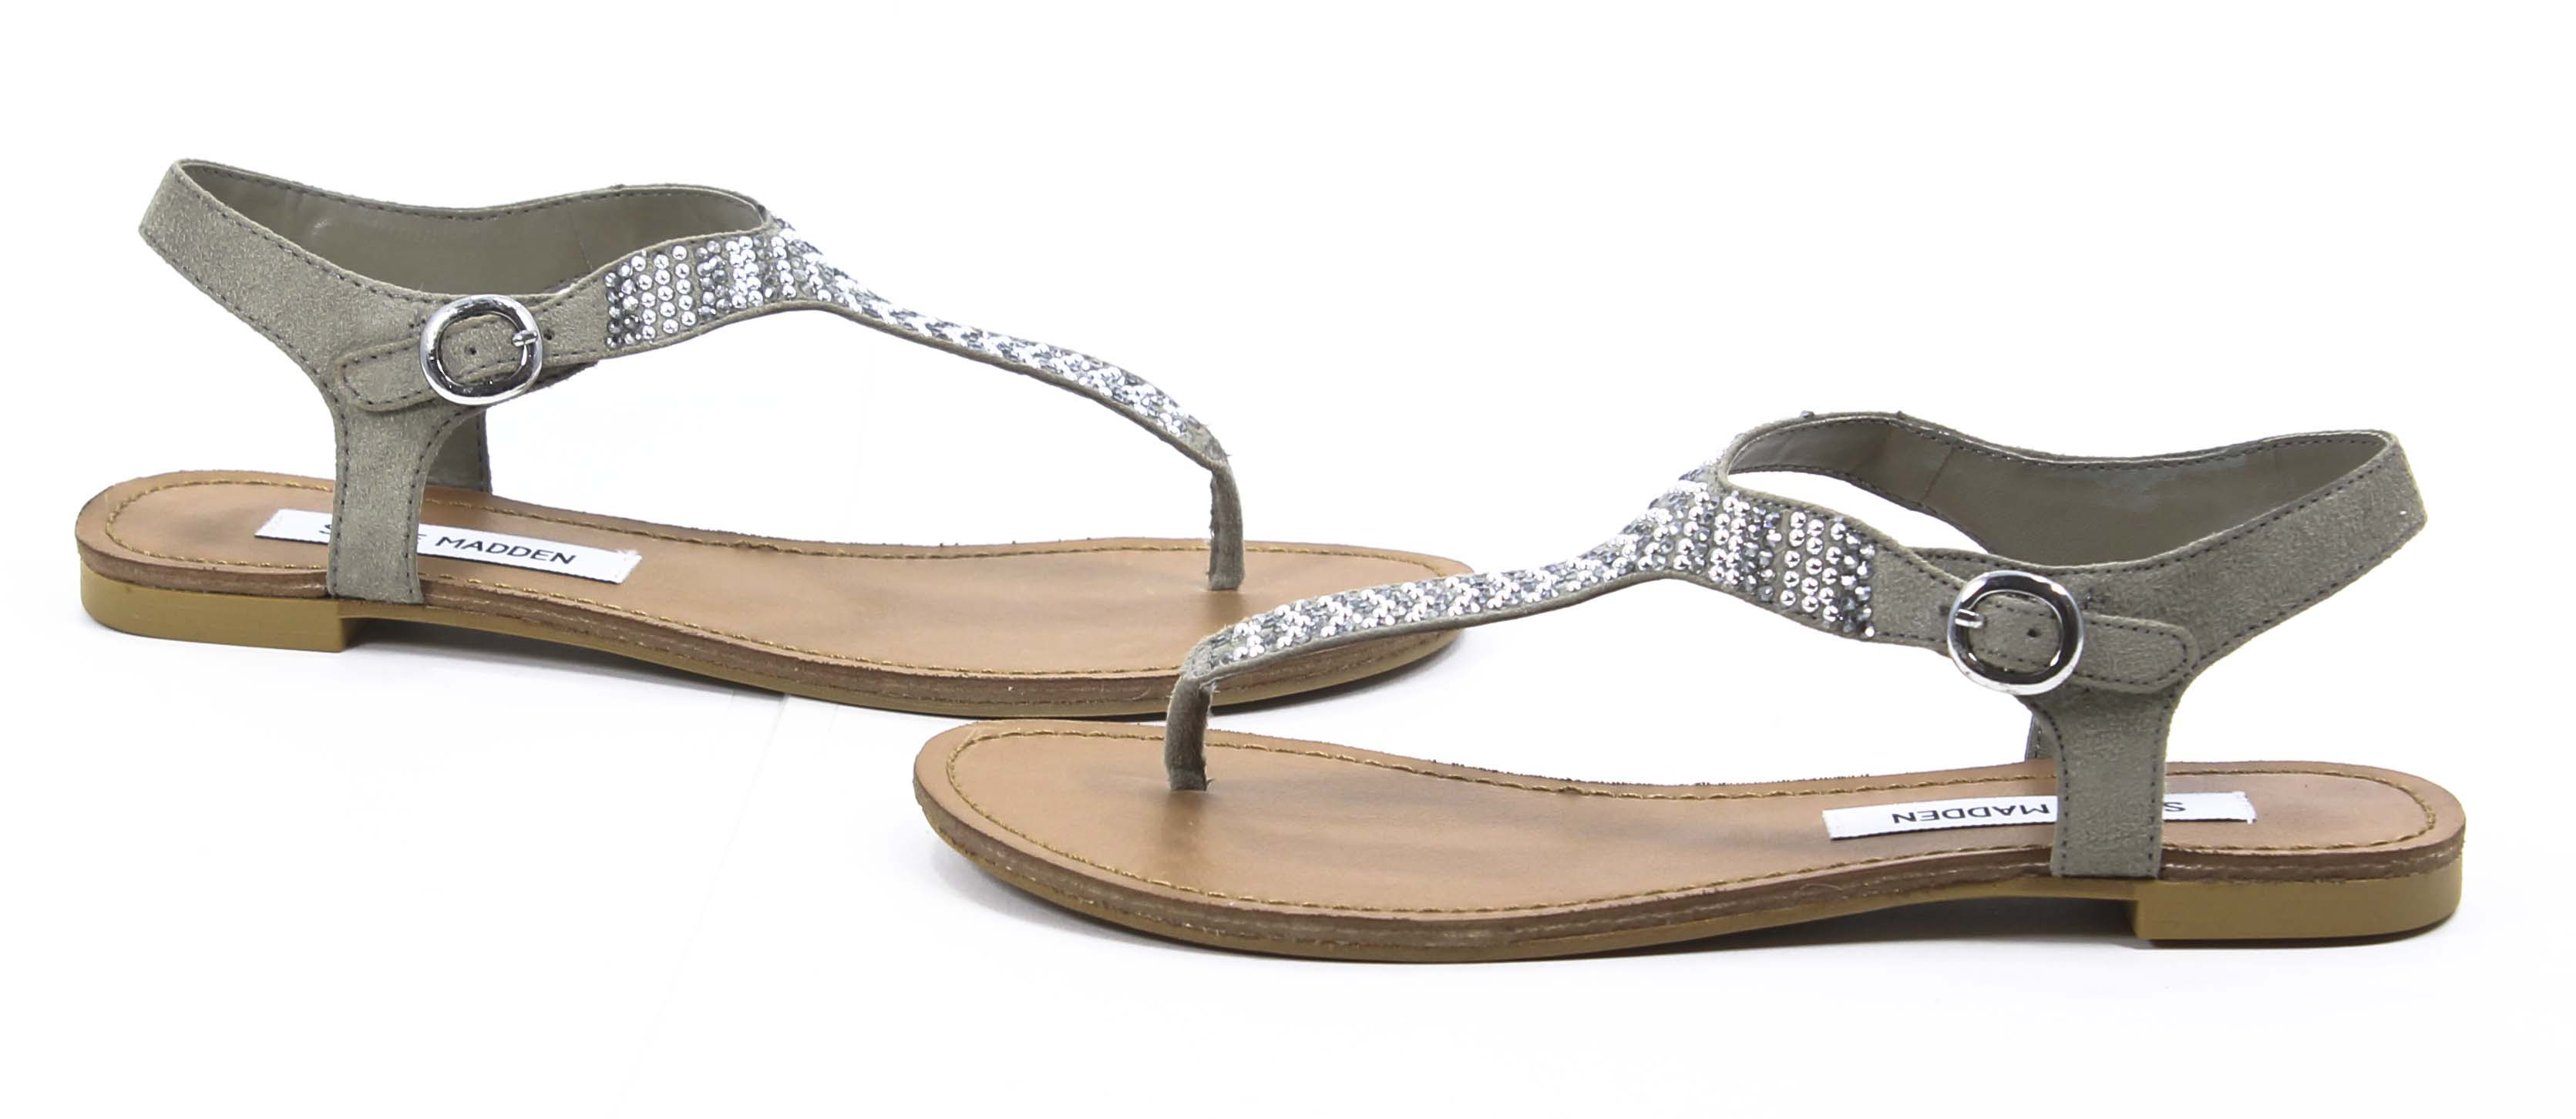 ... Bonkerz Pewter Grey Studded Thong Strap Sandal Shoe 7 5 New | eBay